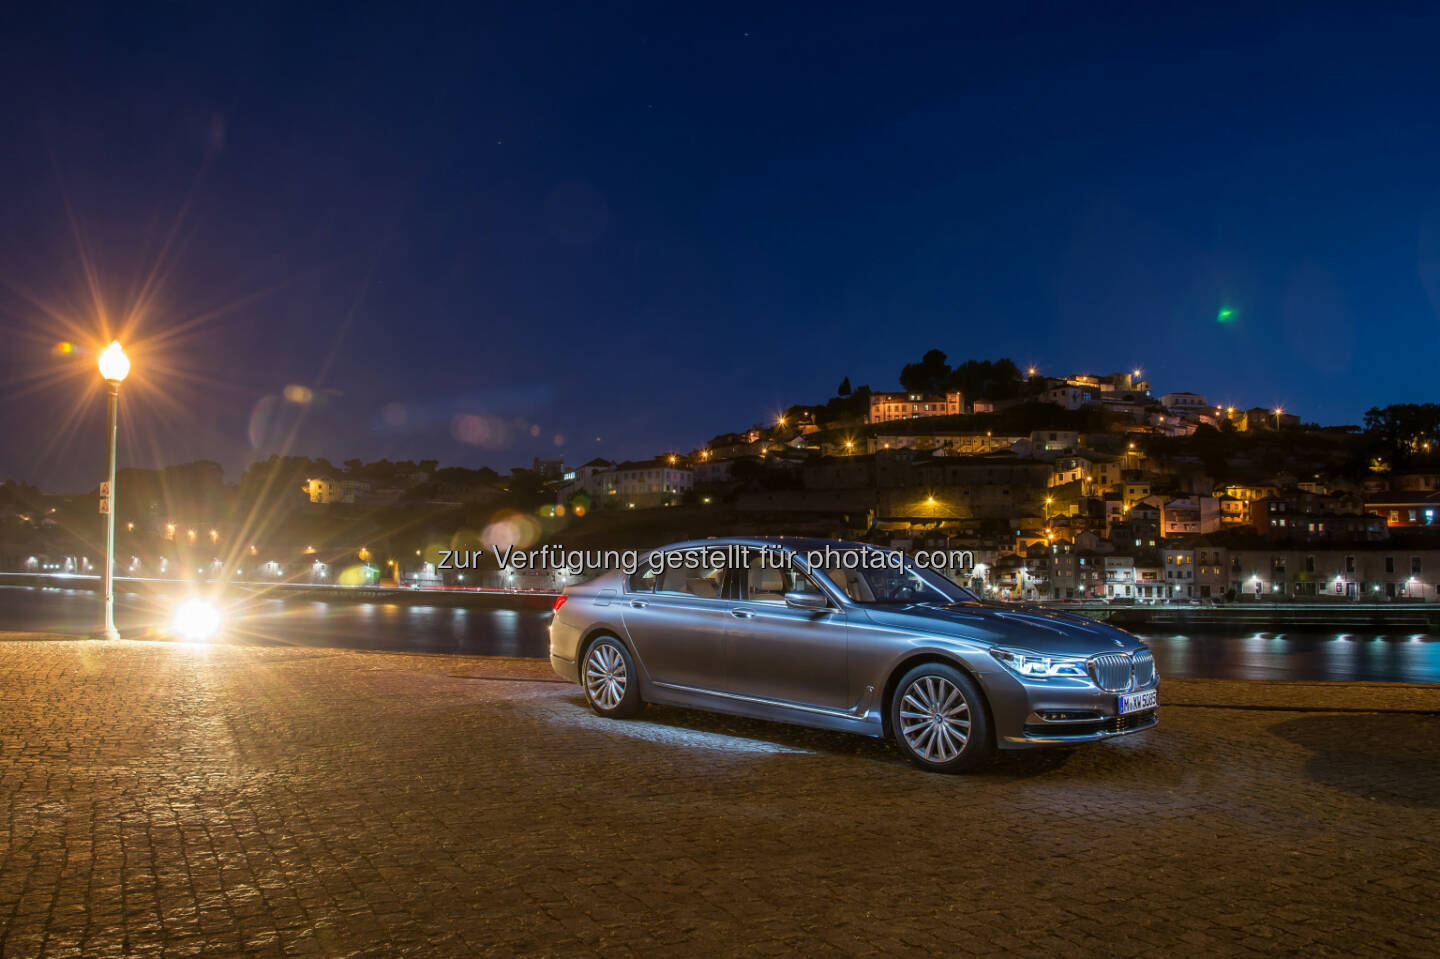 Neuer BMW 750Li xDrive : Auszeichnungen, Preise und Awards für BMW 2015. Position als Trendsetter bei Innovationen, Design, Qualität und Nachhaltigkeit weltweit bestätigt : Fotocredit: BMW Group